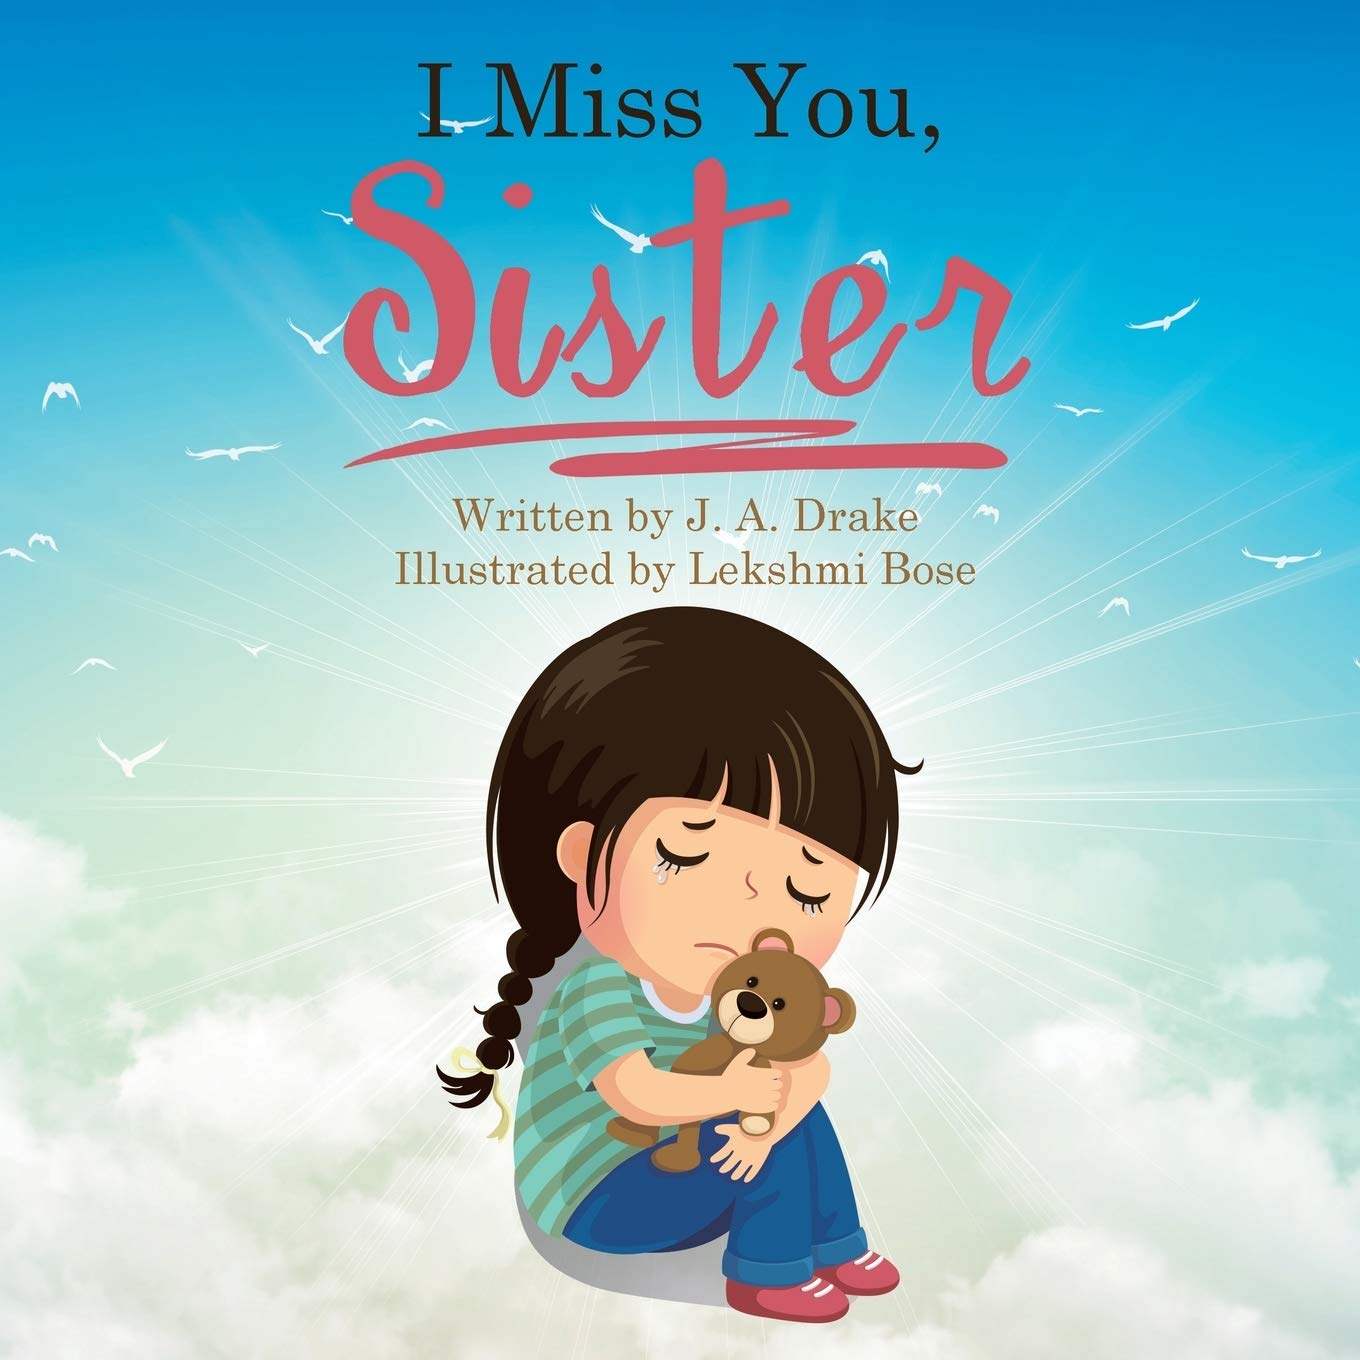 Best Collection of Miss You Sister (Behan) Shayari Quotes Status Slogans Images in Hindi on Raksha Bandhan for Whatsapp FB Insta Twitter | मिस यू बहन (सिस्टर) शायरी स्लोगन स्टेटस हिंदी में रक्षा बंधन पर